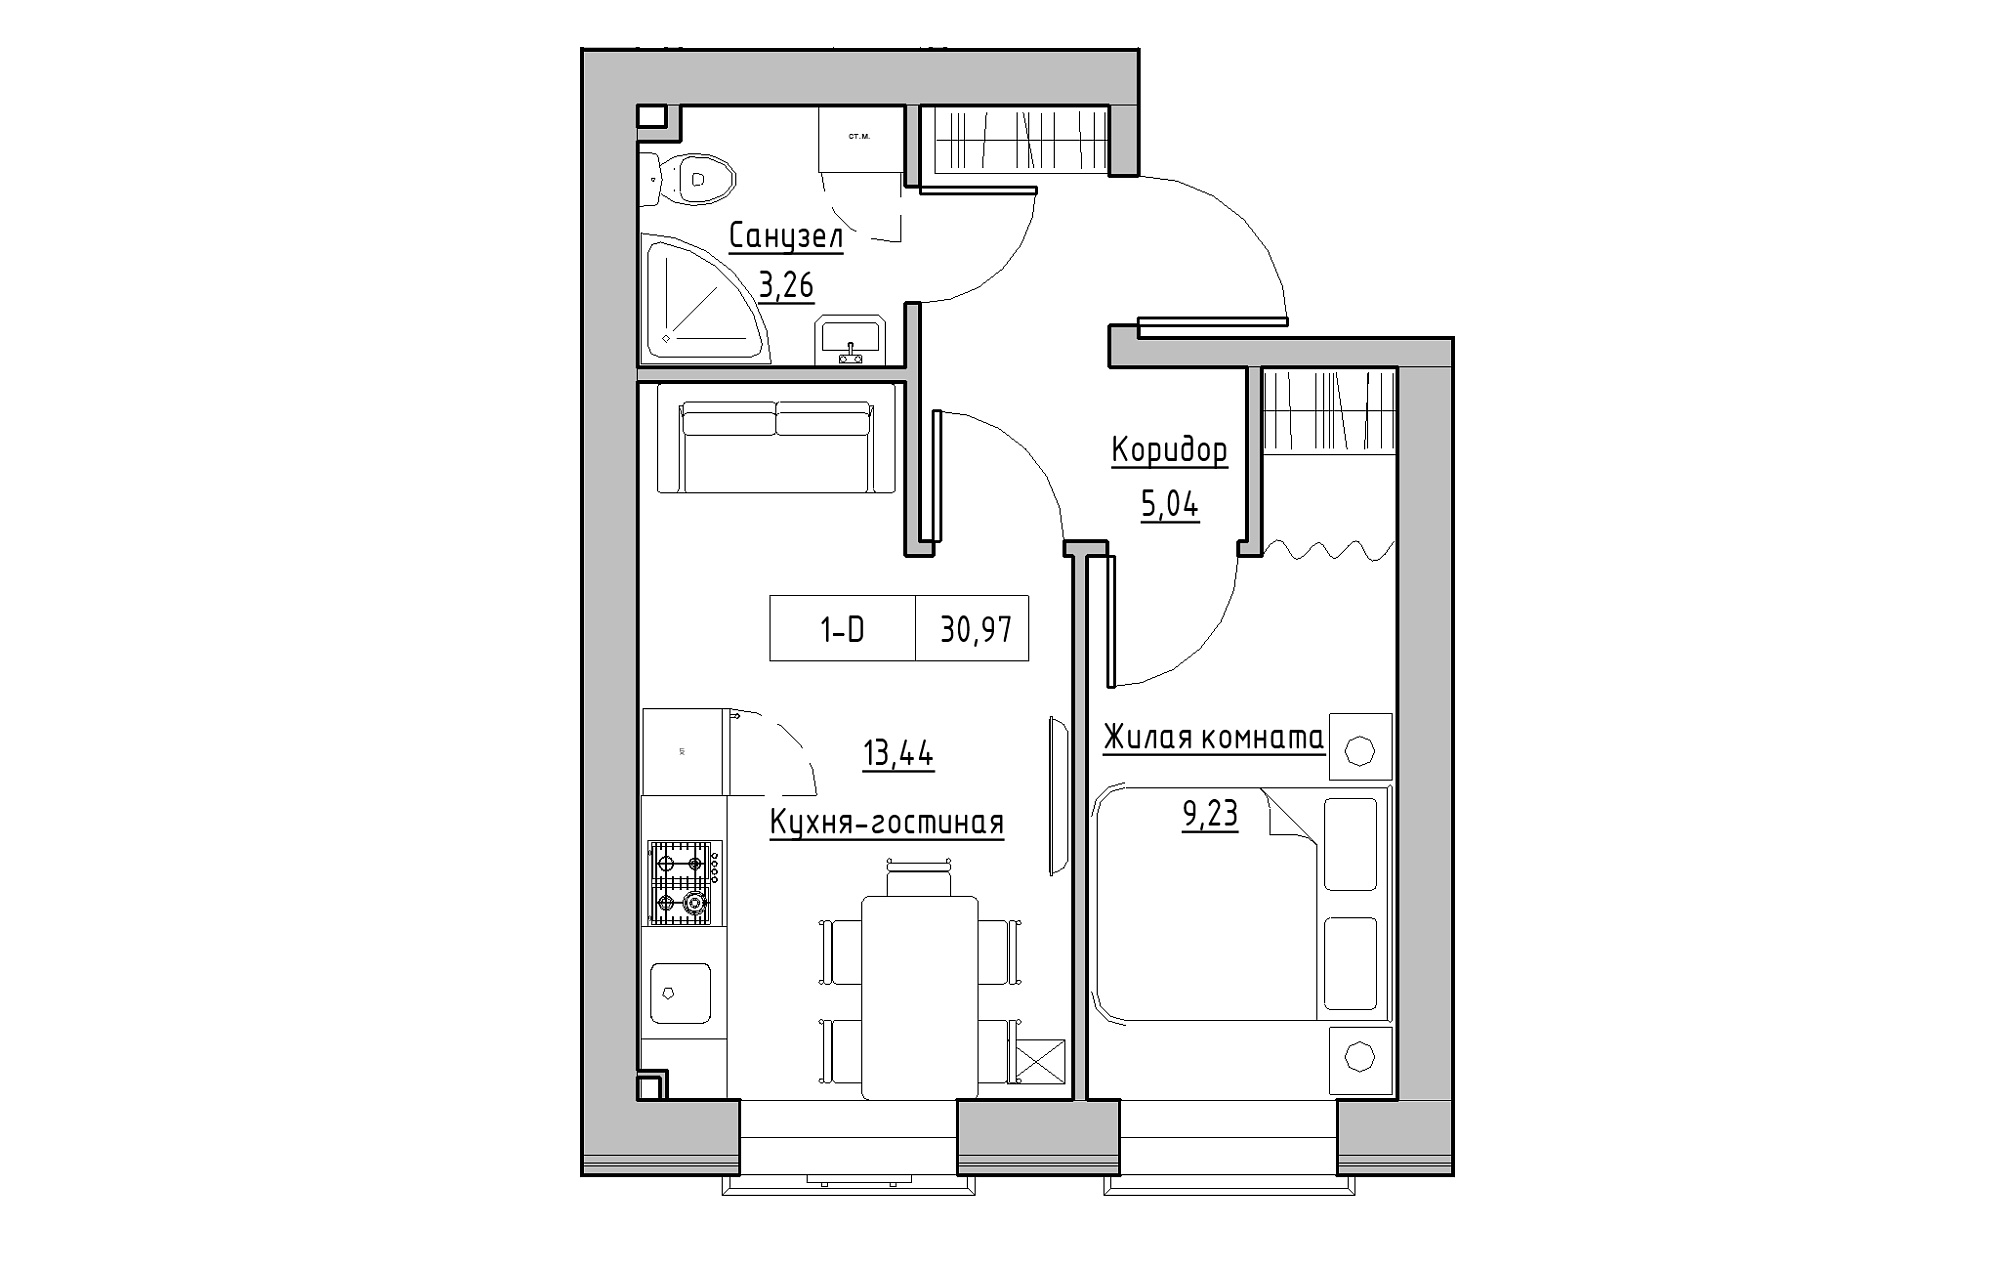 Планировка 1-к квартира площей 30.97м2, KS-018-01/0003.